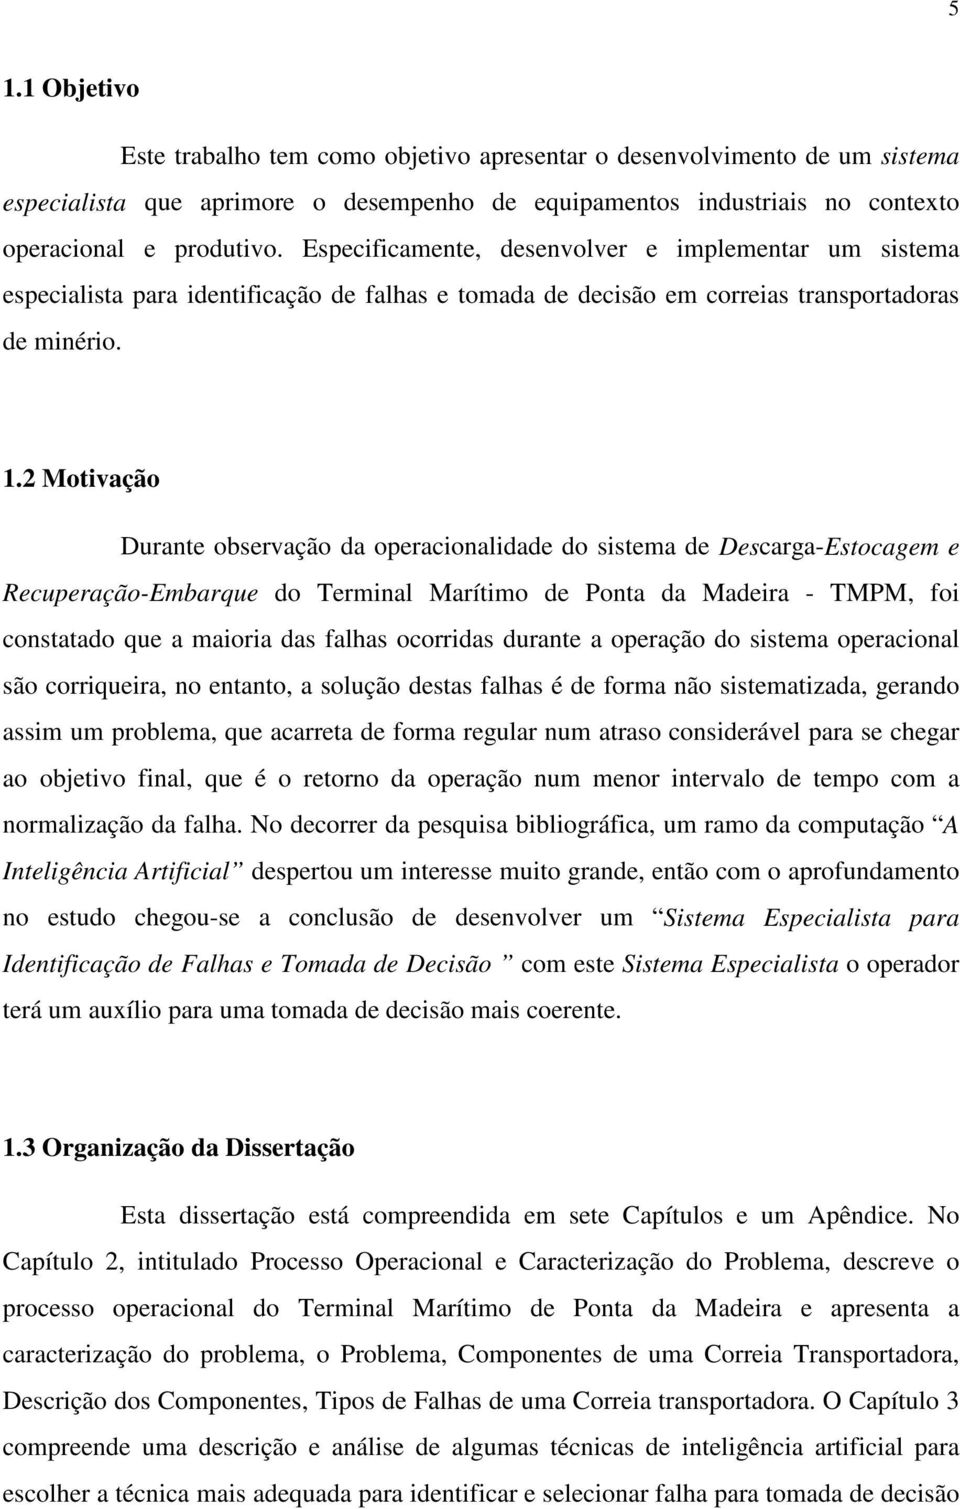 2 Motivação Durante observação da operacionalidade do sistema de Descarga-Estocagem e Recuperação-Embarque do Terminal Marítimo de Ponta da Madeira - TMPM, foi constatado que a maioria das falhas